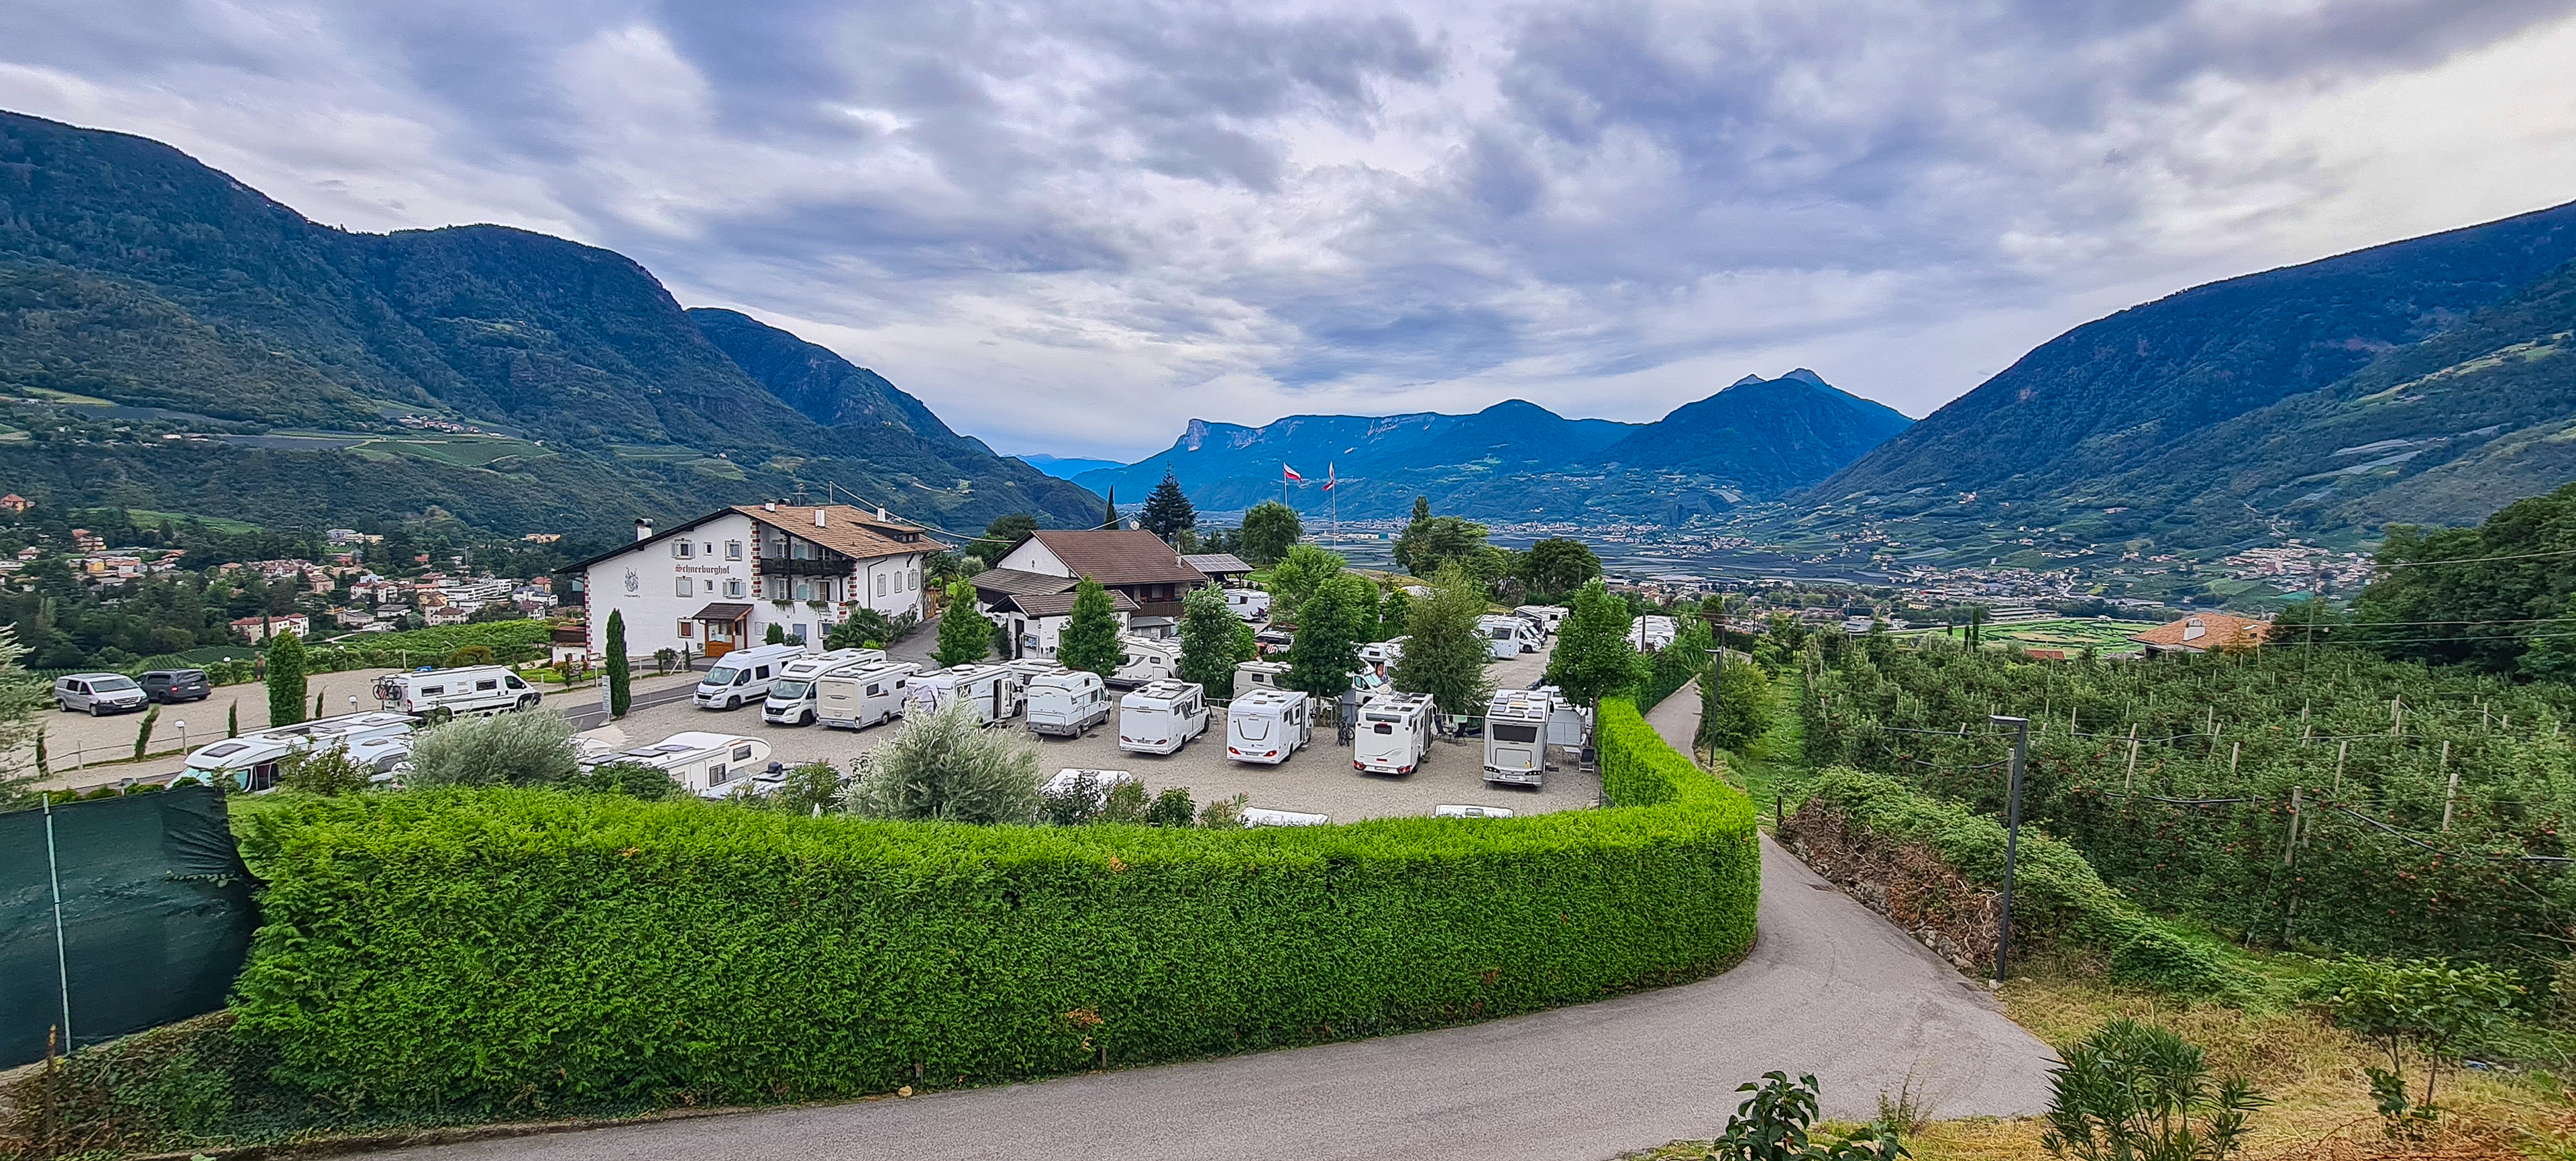 Campingplatz Dorf Tirol bei Meran in Südtirol, Italien